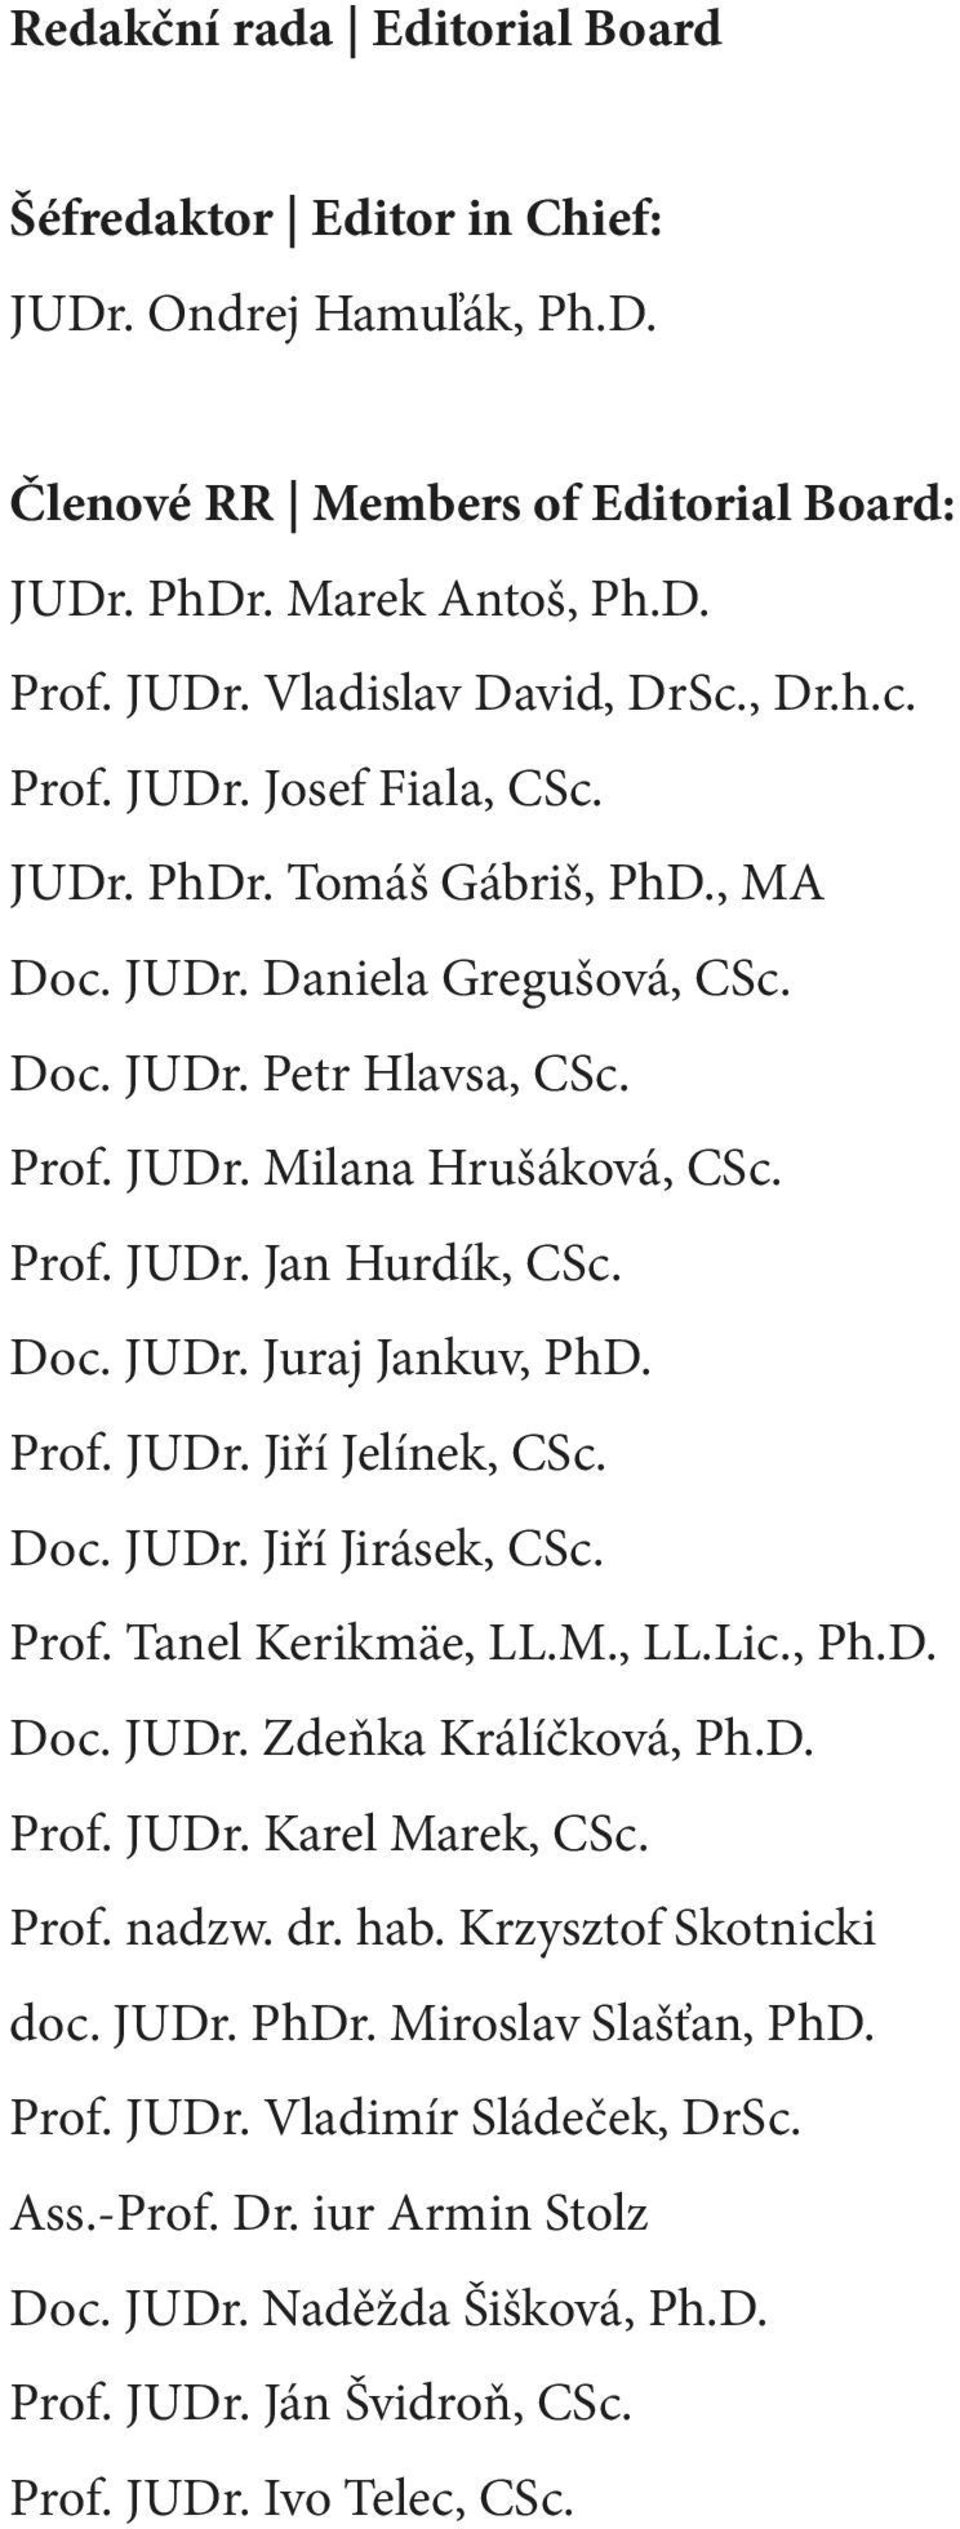 Doc. JUDr. Jiří Jirásek, CSc. Prof. Tanel Kerikmäe, LL.M., LL.Lic., Ph.D. Doc. JUDr. Zdeňka Králíčková, Ph.D. Prof. JUDr. Karel Marek, CSc. Prof. nadzw. dr. hab. Krzysztof Skotnicki doc. JUDr. PhDr.